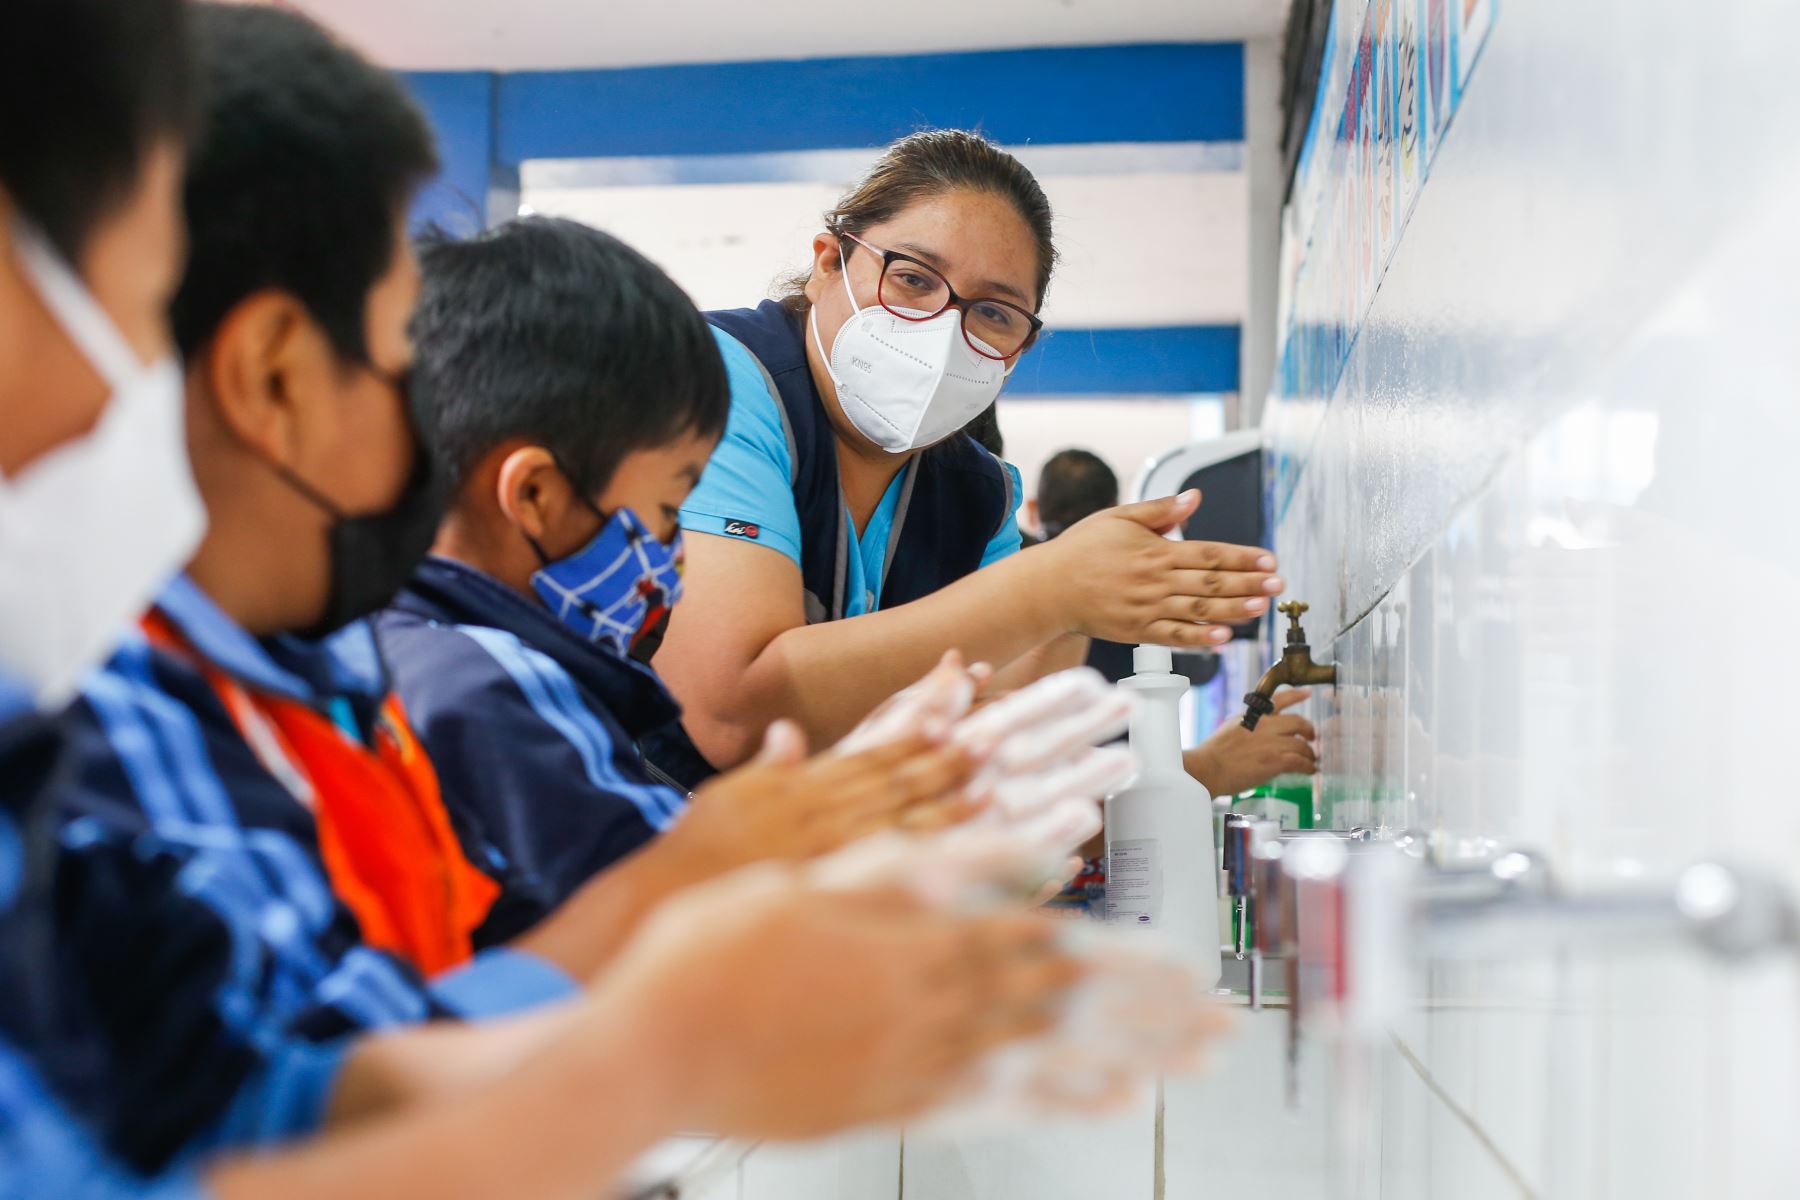 Ministerio de Salud refuerza medidas de prevención contra la covid-19 en colegios.
Foto: Minsa